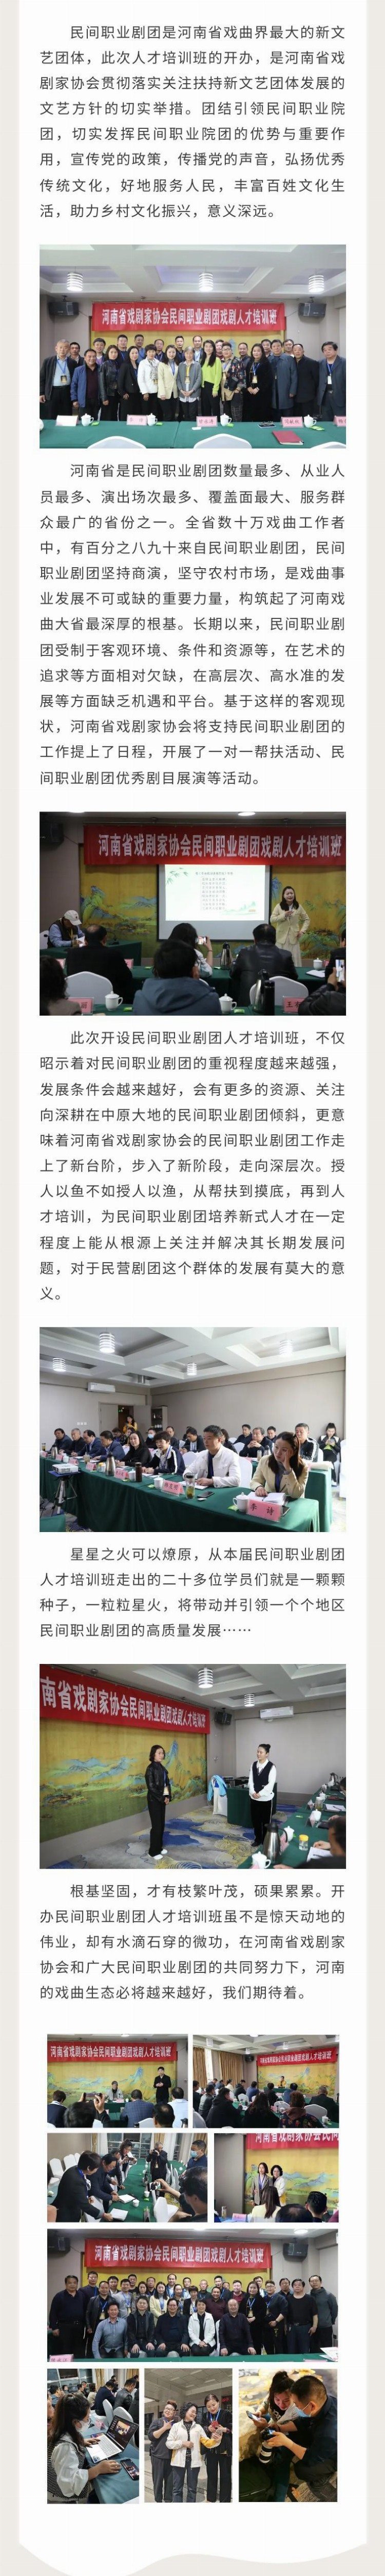 河南省戏剧家协会民间职业剧团戏剧人才培训班圆满结业